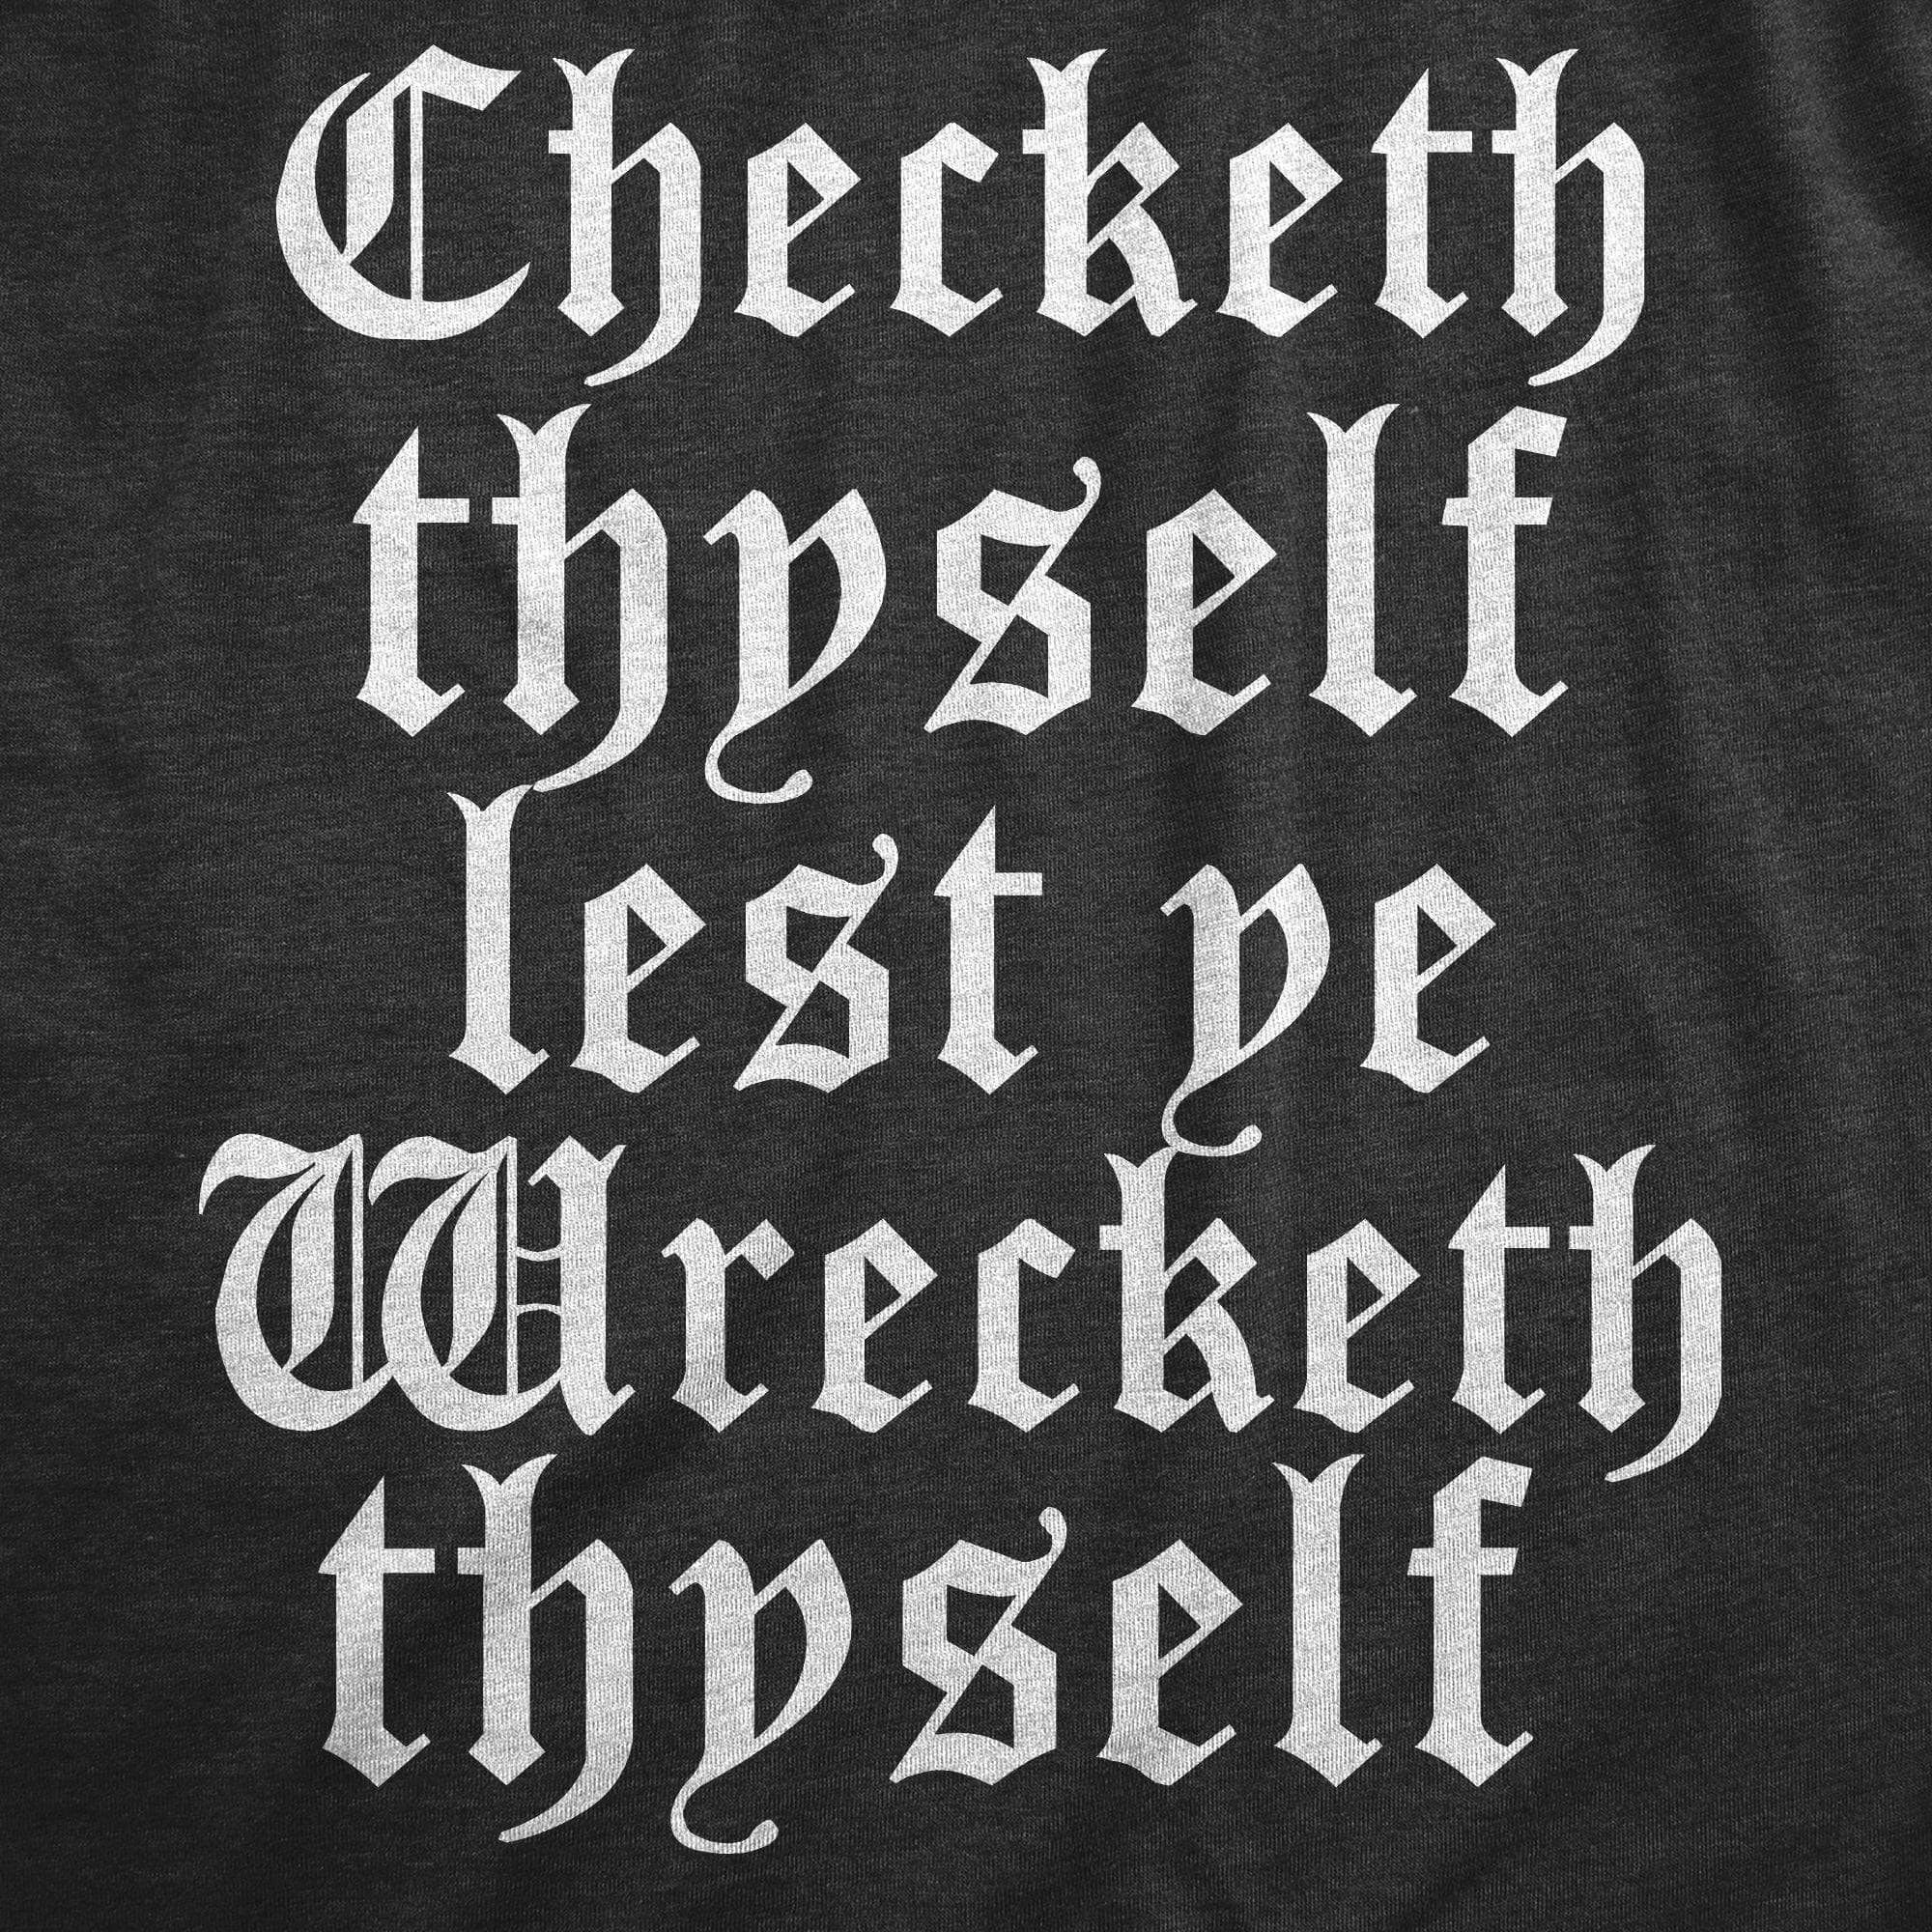 Checketh Thyself Lest Ye Wrecketh Thyself Women's Tshirt  -  Crazy Dog T-Shirts